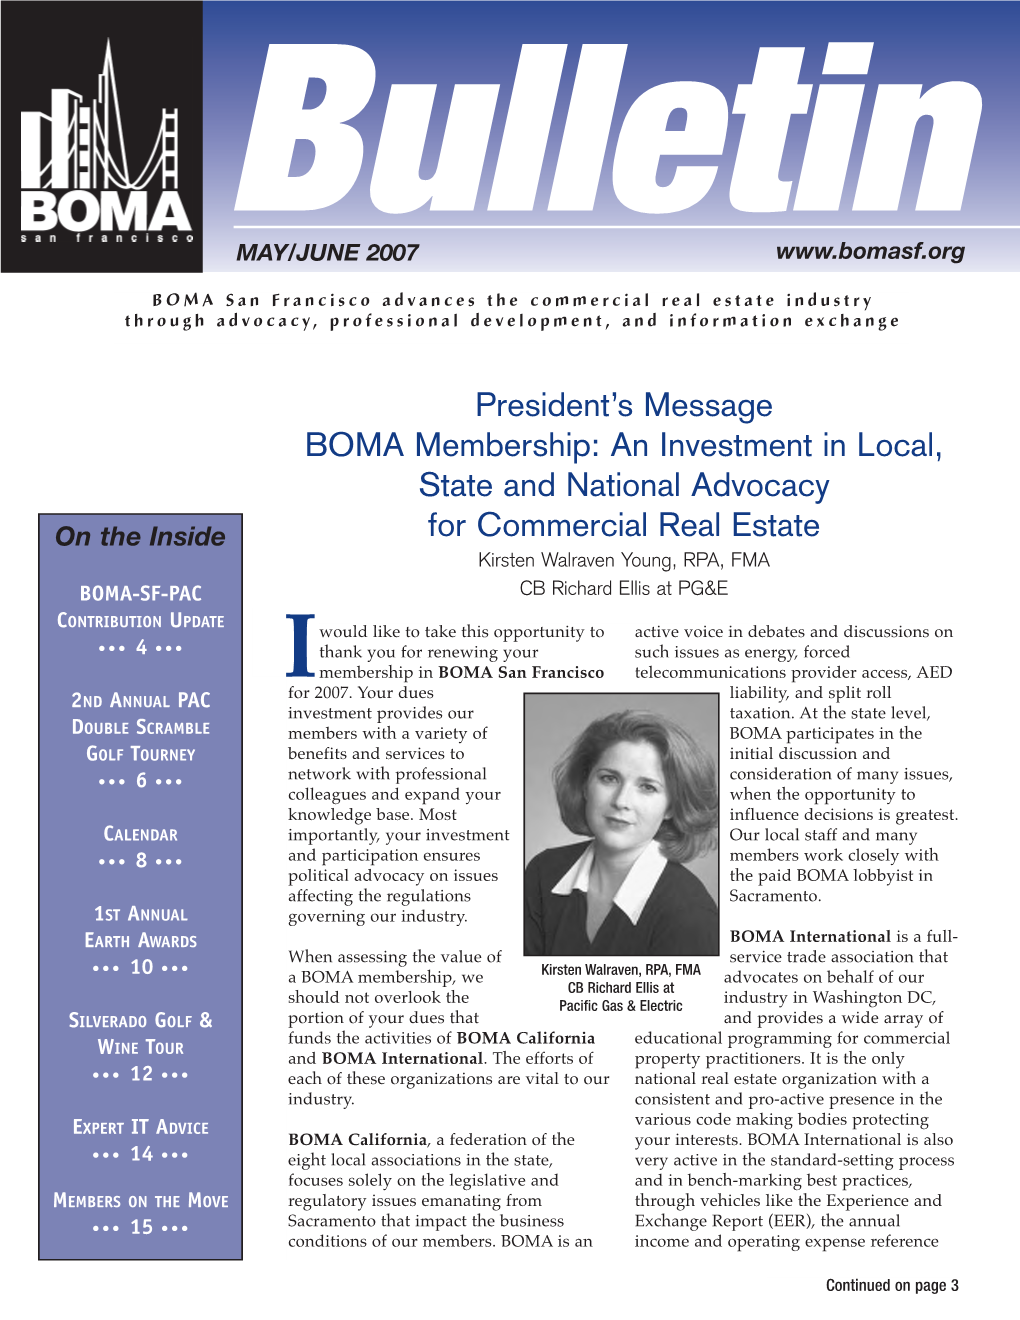 BOMA Bulletin-May/June 2007